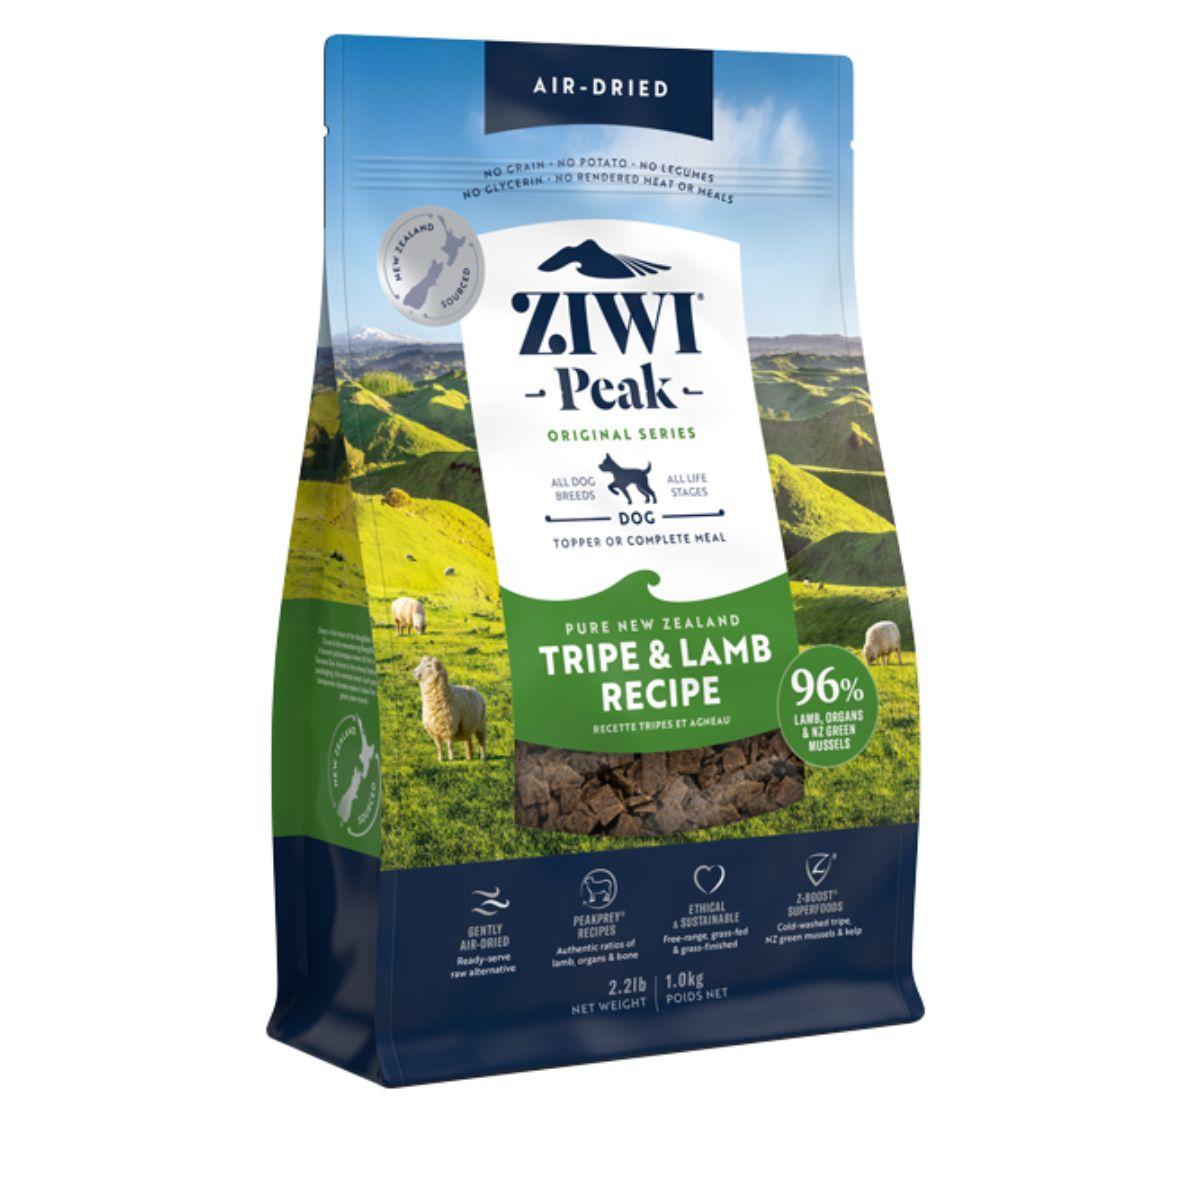 Ziwipeak Air Dried Tripe & Lamb Dry Dog Food